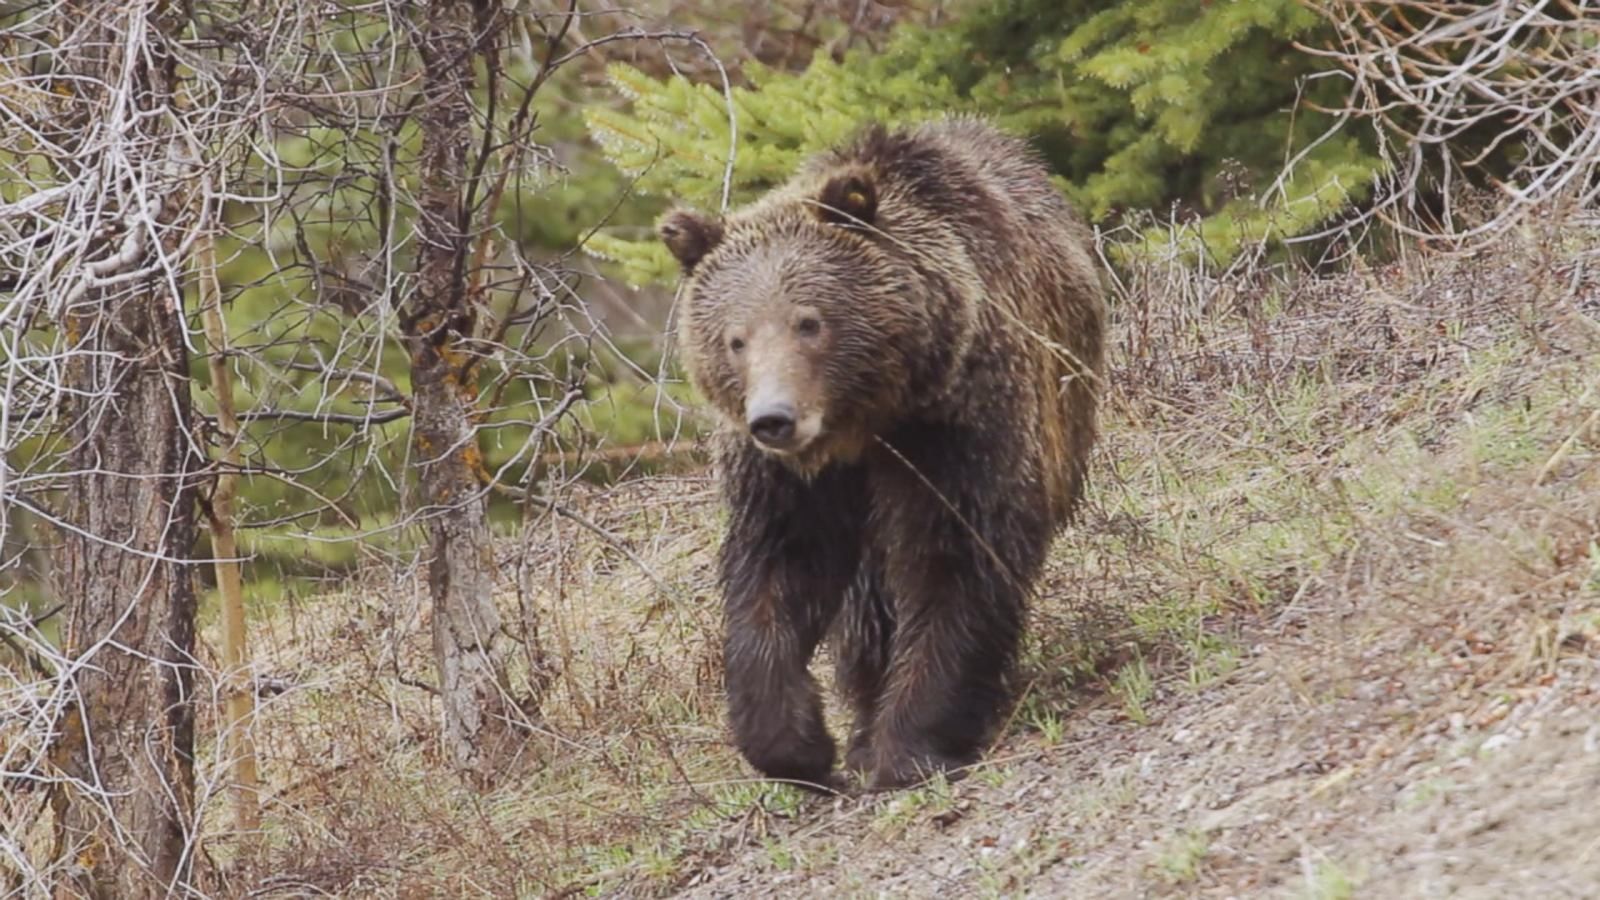 Man survives brown bear attack in Alaska - Good Morning America